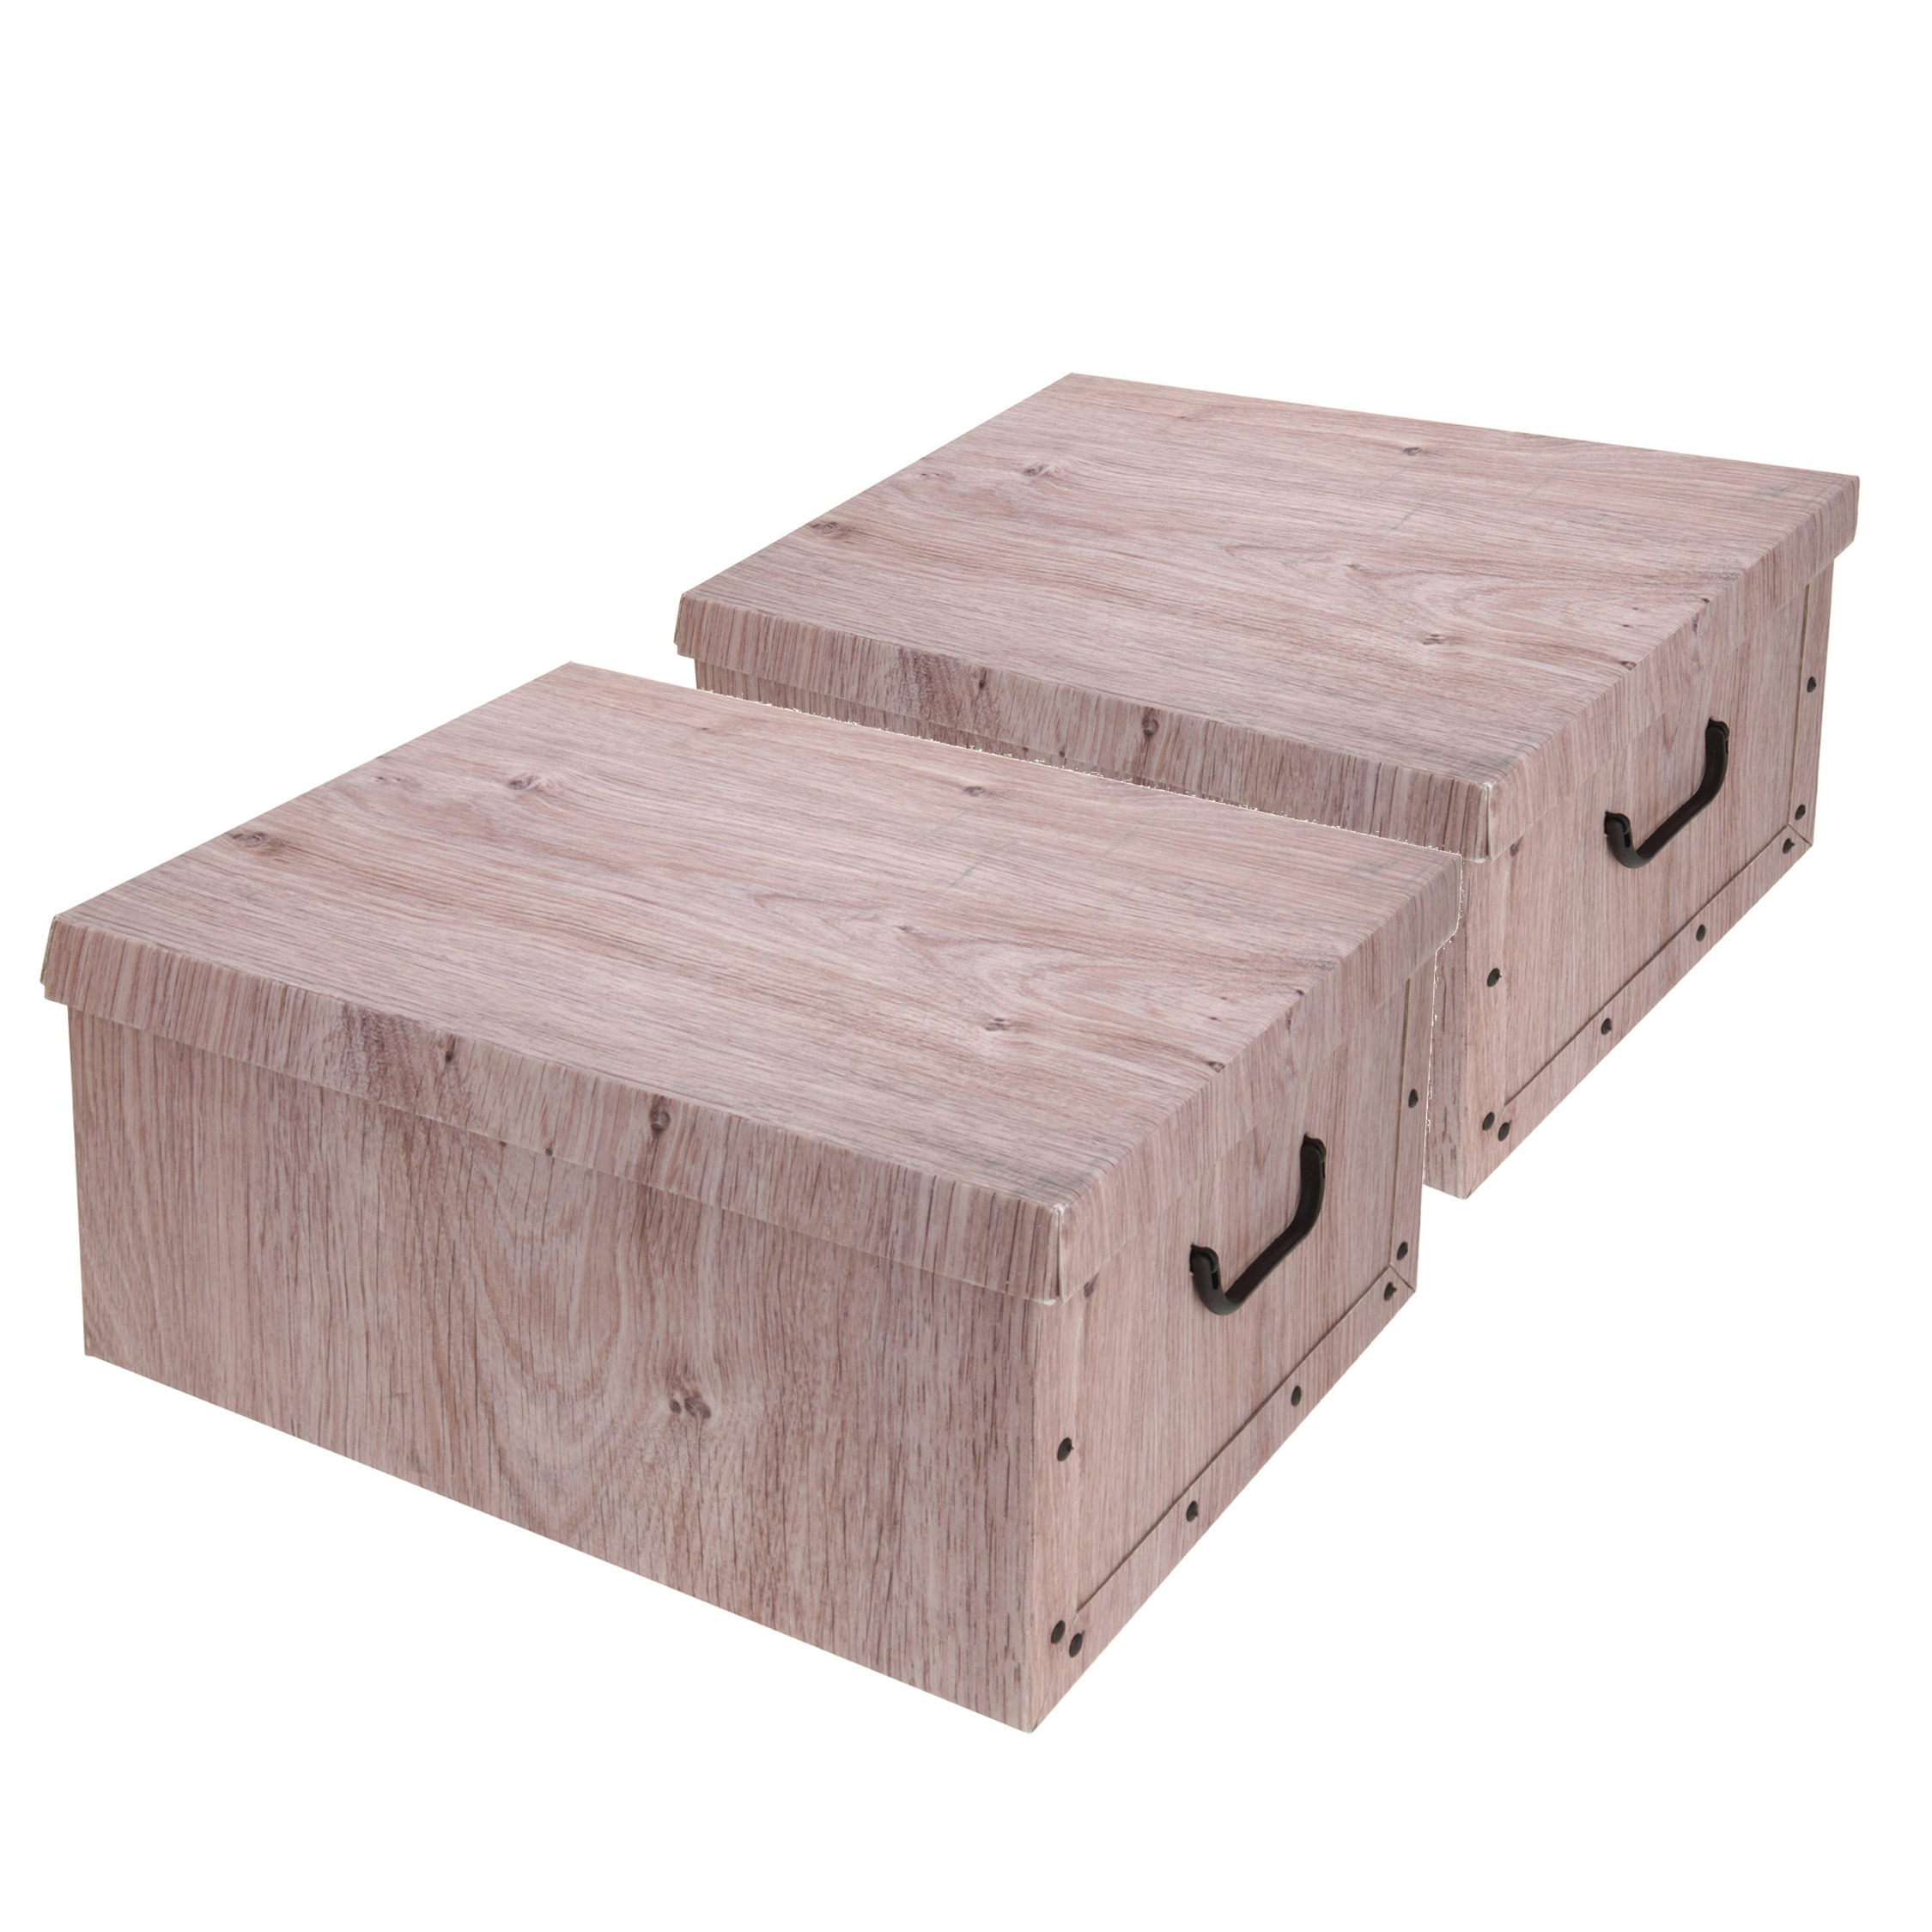 Set van 2x stuks opbergdoos-opberg box van karton met hout print bruin 37 x 30 x 16 cm